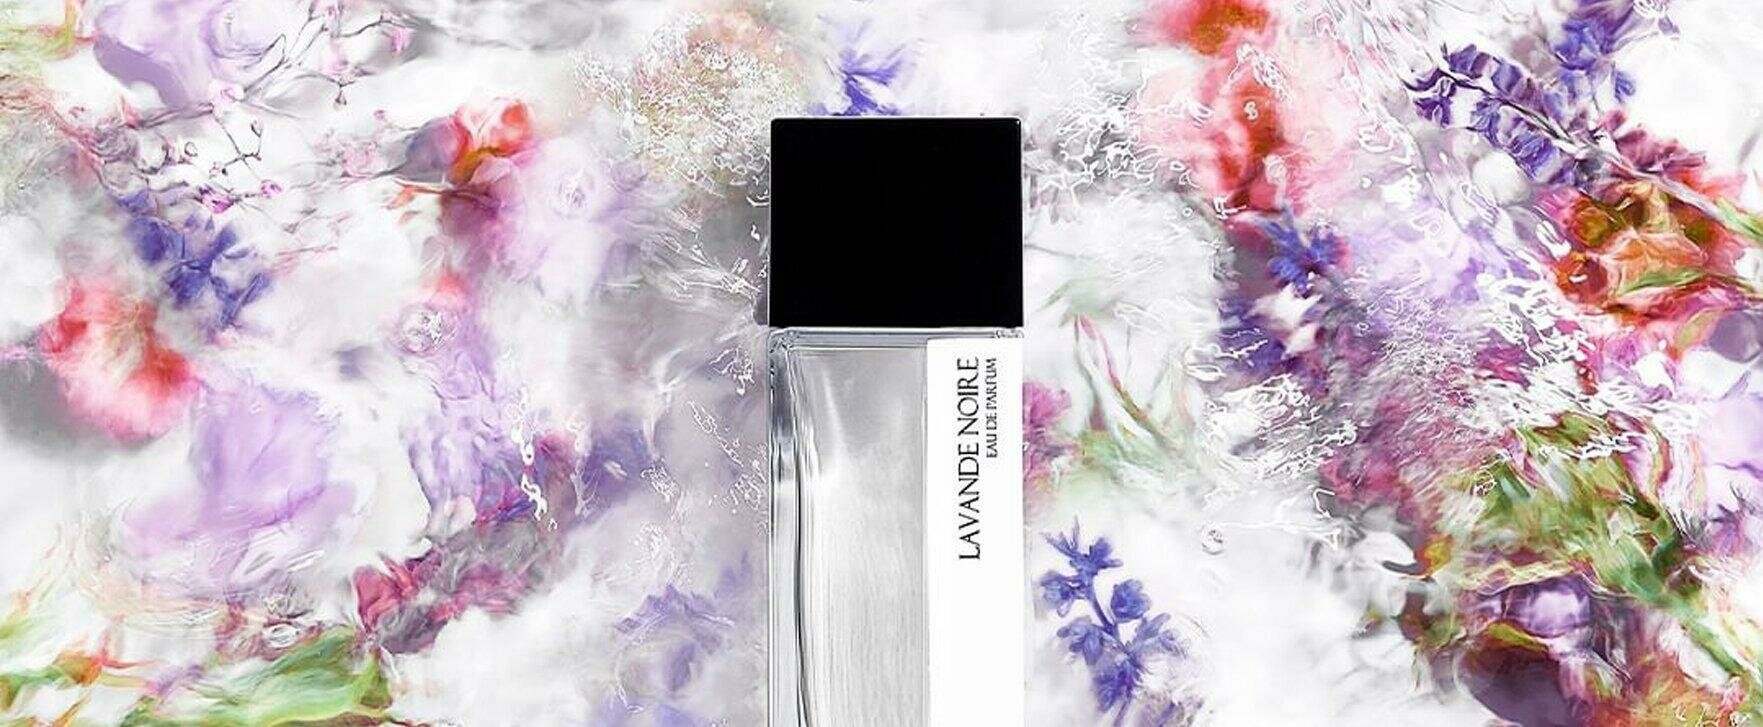 A Walk Through Fragrant Lavender Fields: "Lavande Noire" by LM Parfums